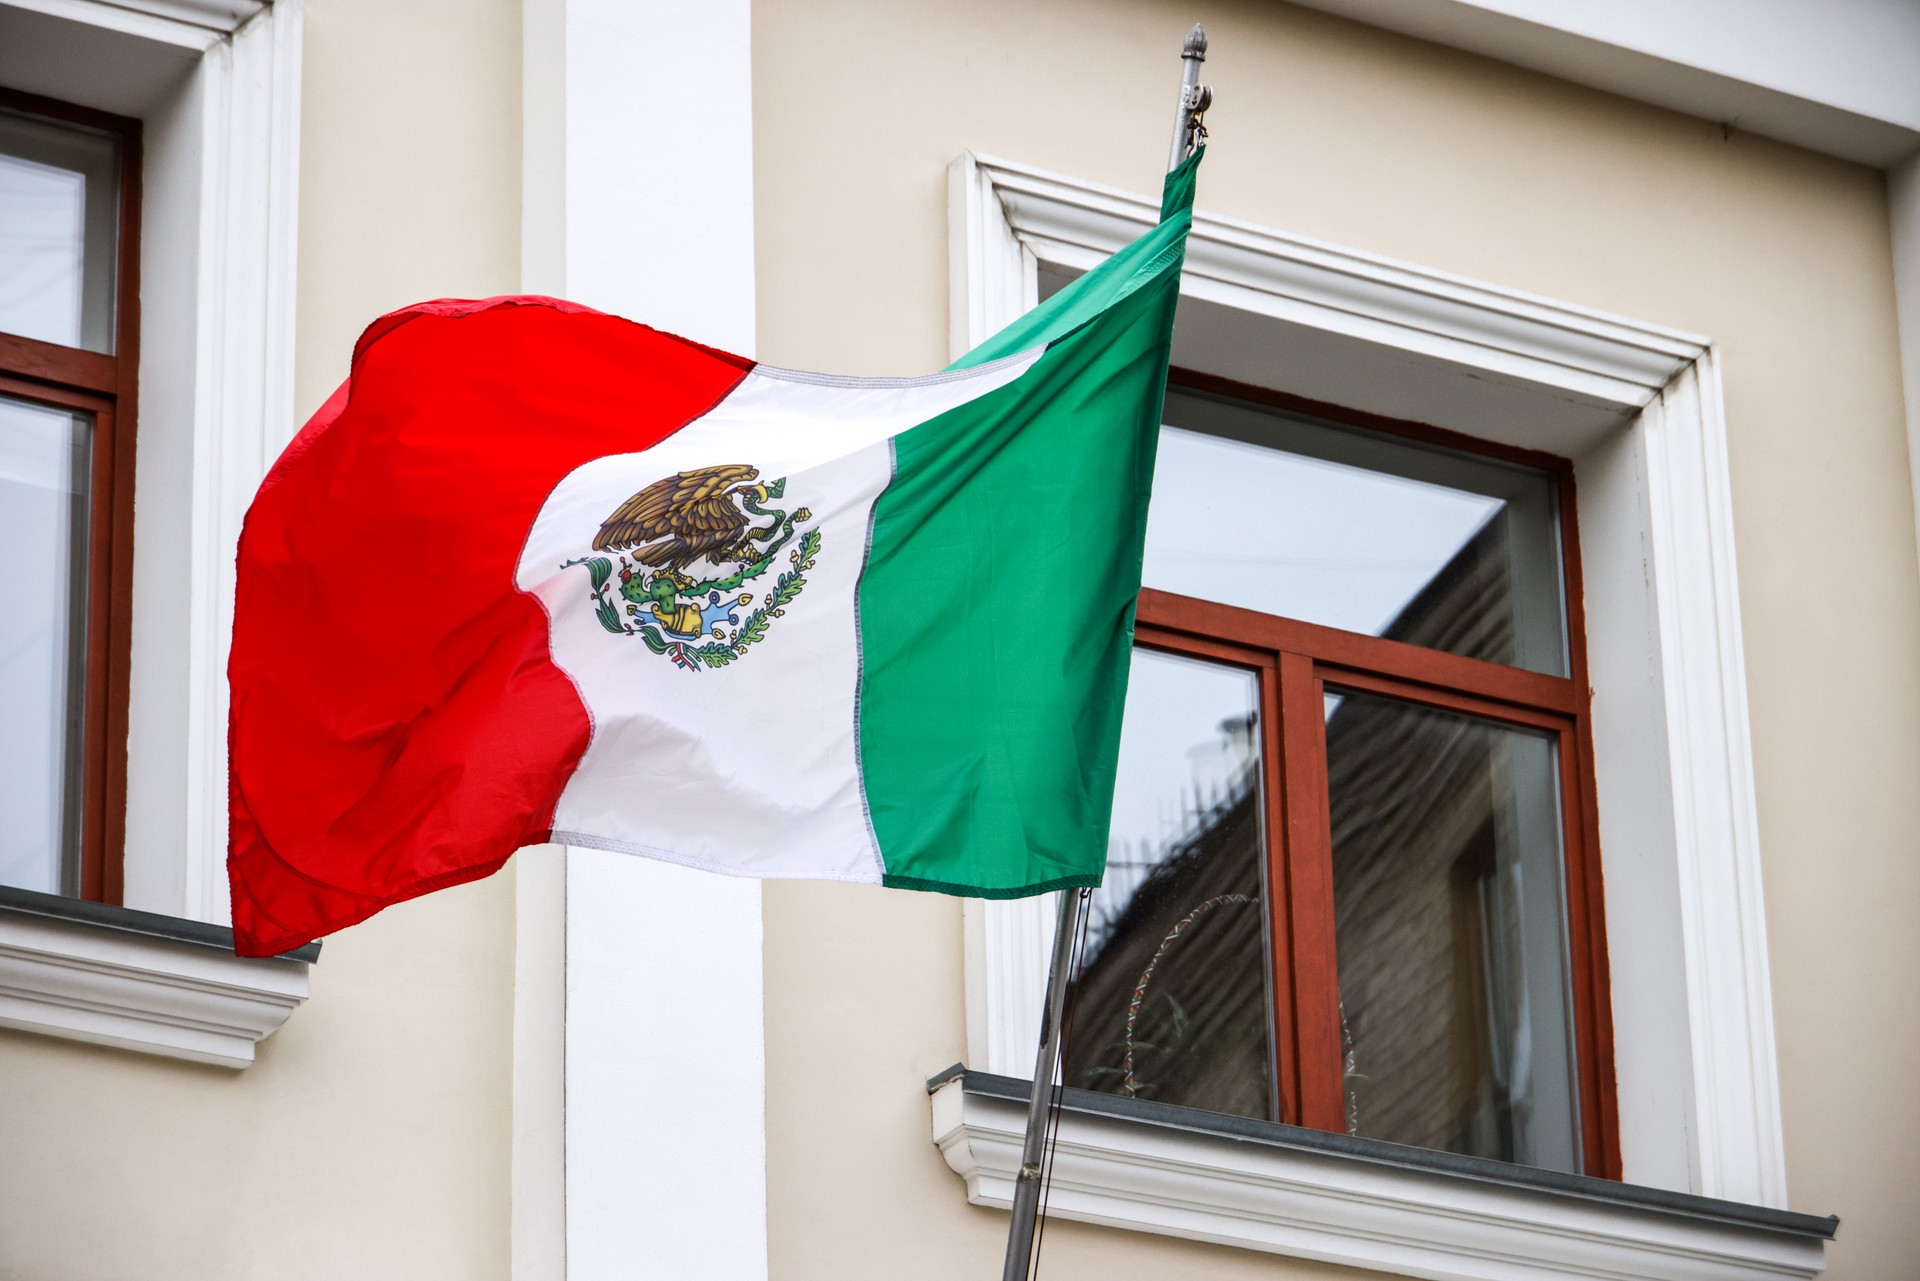 Мексика разрывает дипотношения с Эквадором после штурма посольства 